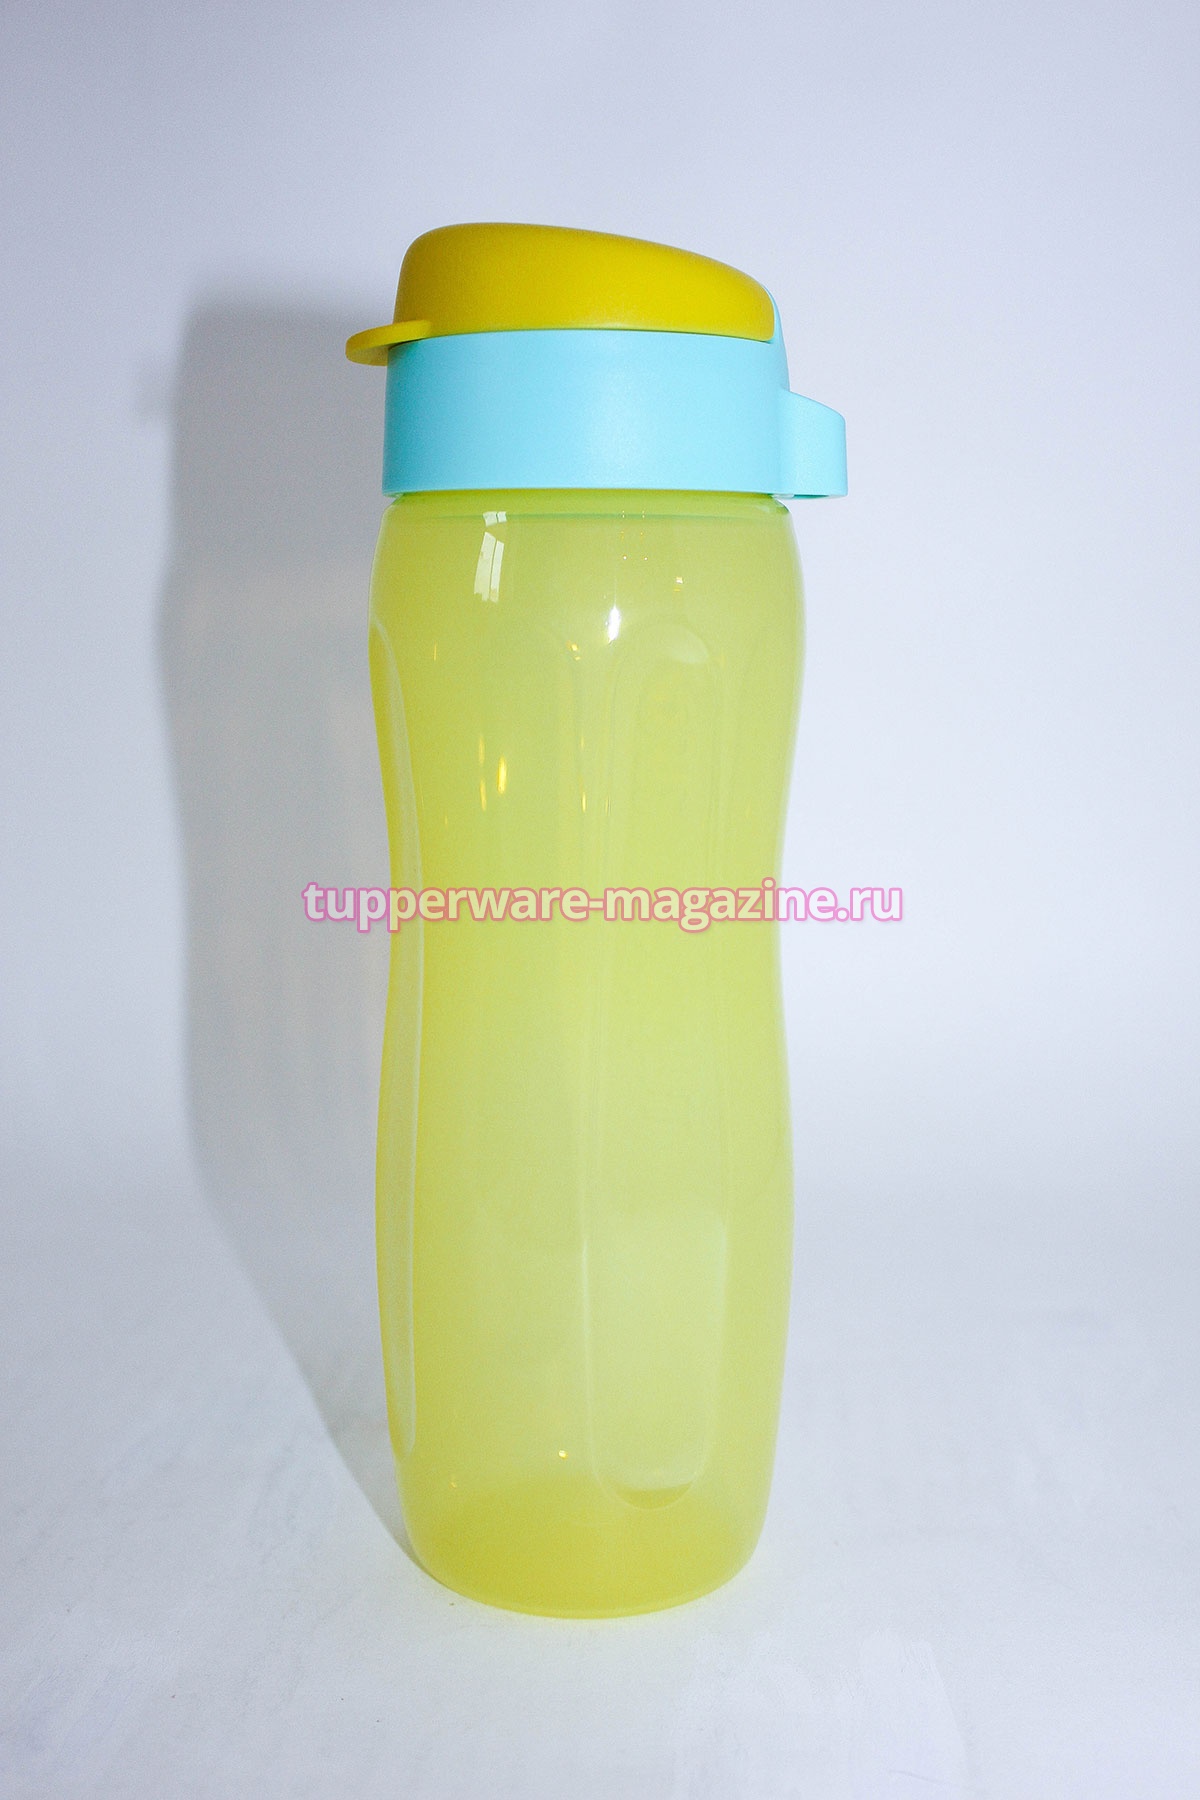 Эко-бутылка "Стиль" 500 мл с клапаном в желтом цвете